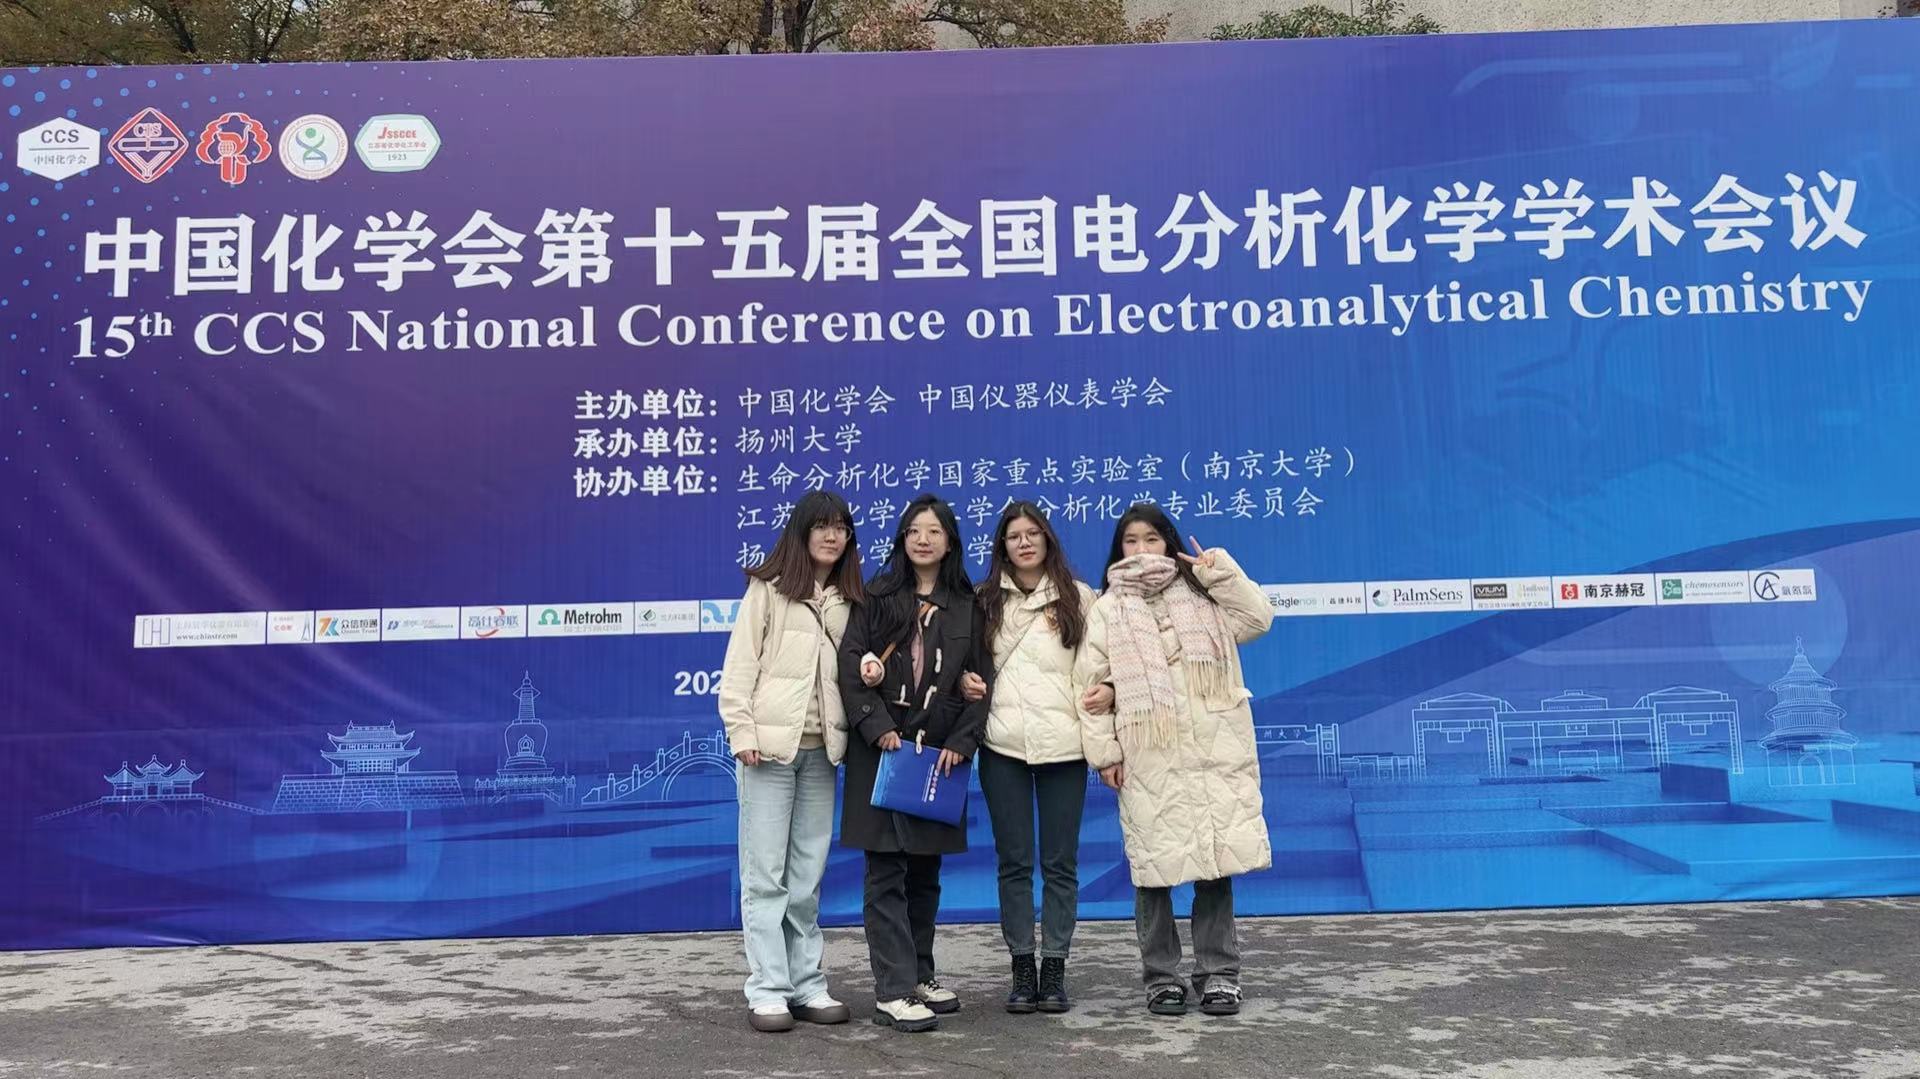 祝贺课题组同学参加扬州电分析化学会.jpg